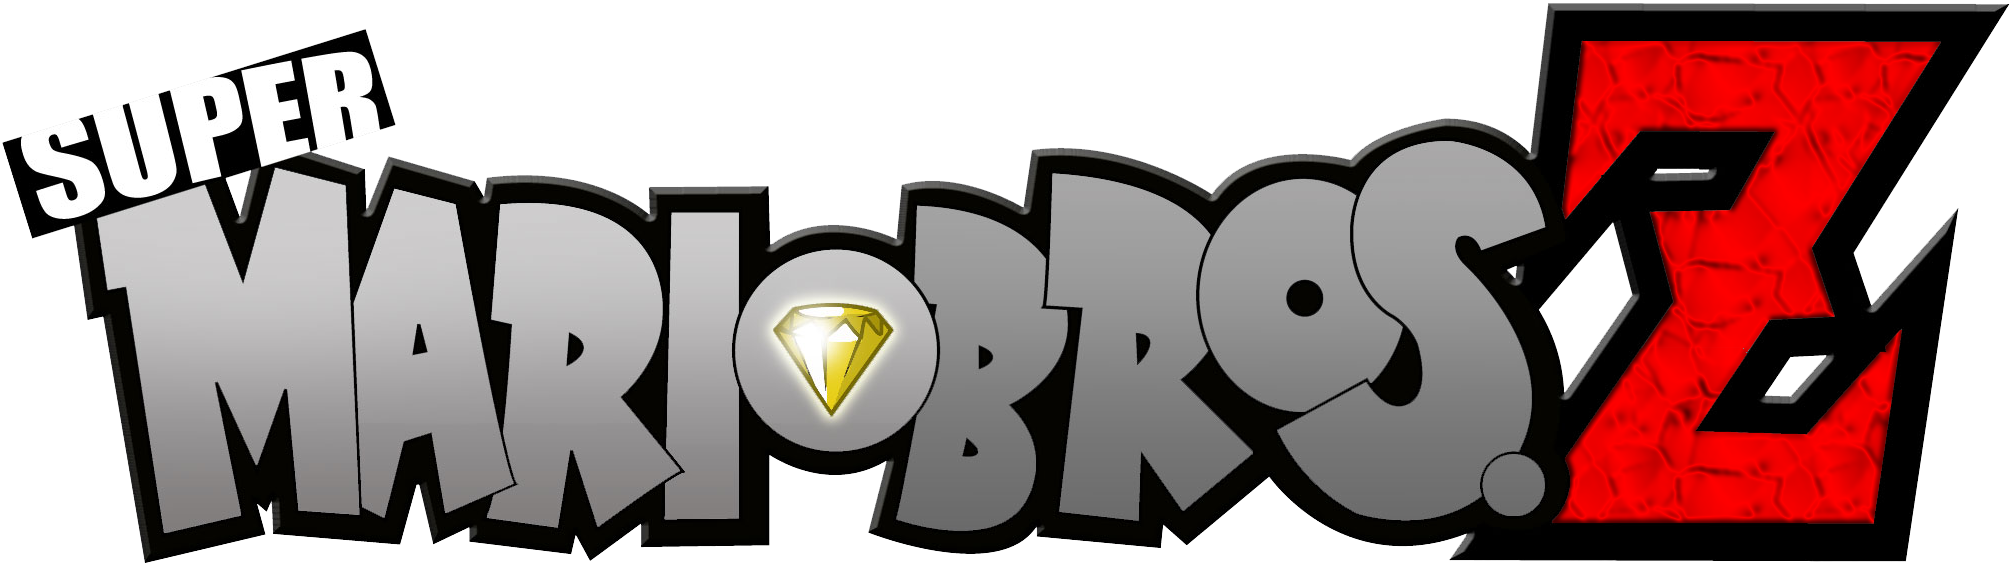 Super Mario Bros Z Modified Logo By Asylusgoji91 - Super Mario Bros Z (2077x722)